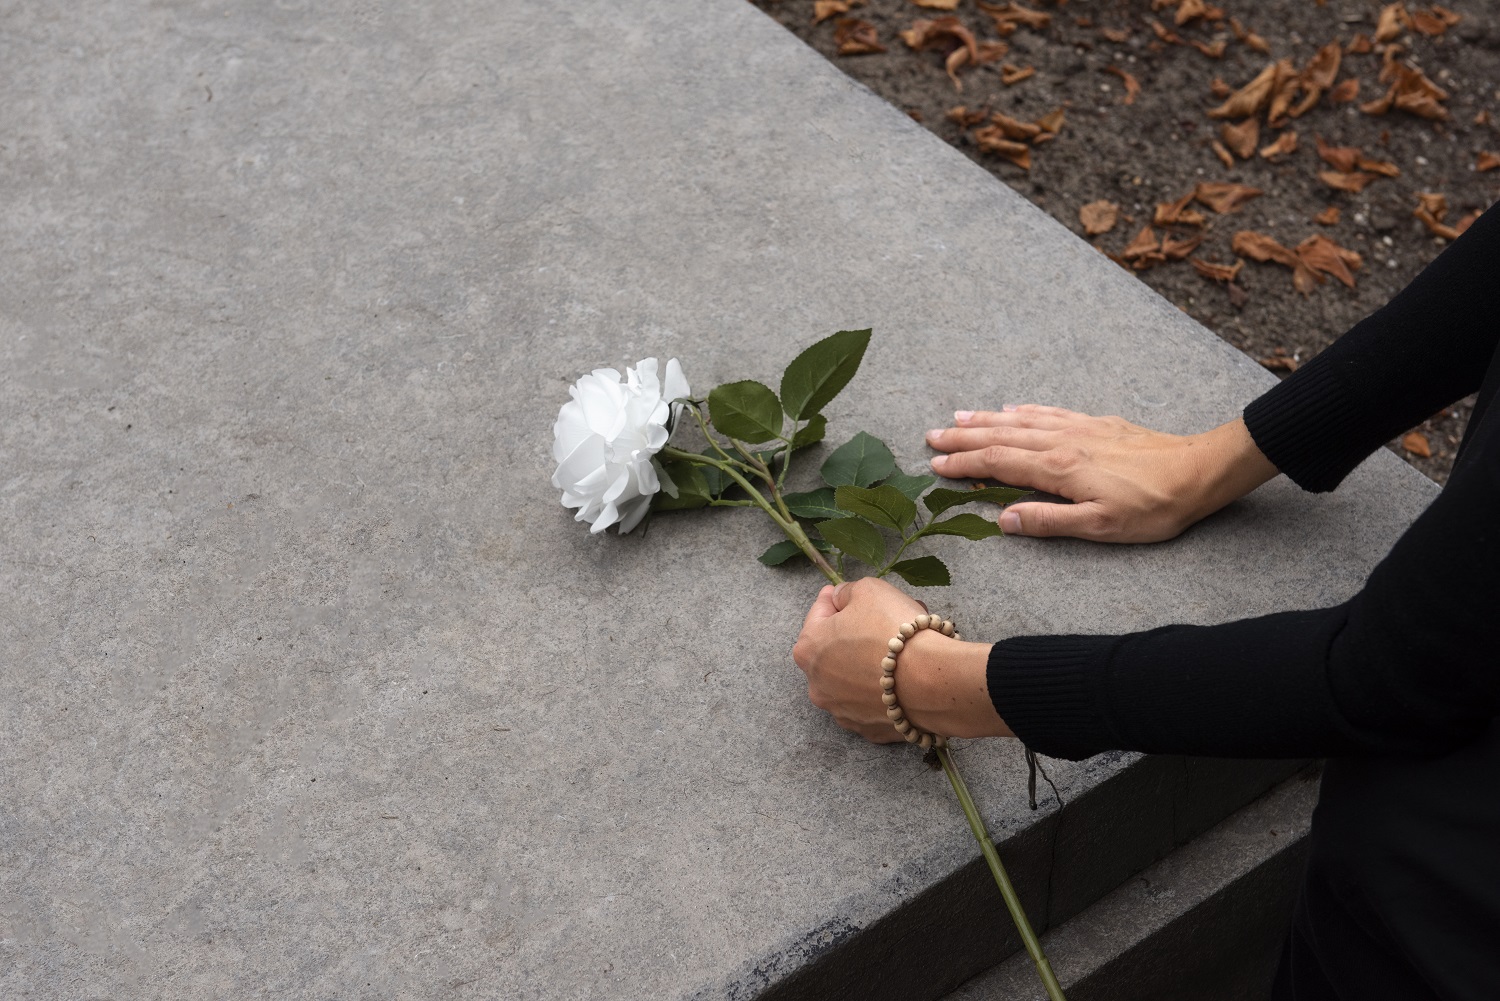 Uma imagem de mão segurando uma flor branca sobre um caixão.